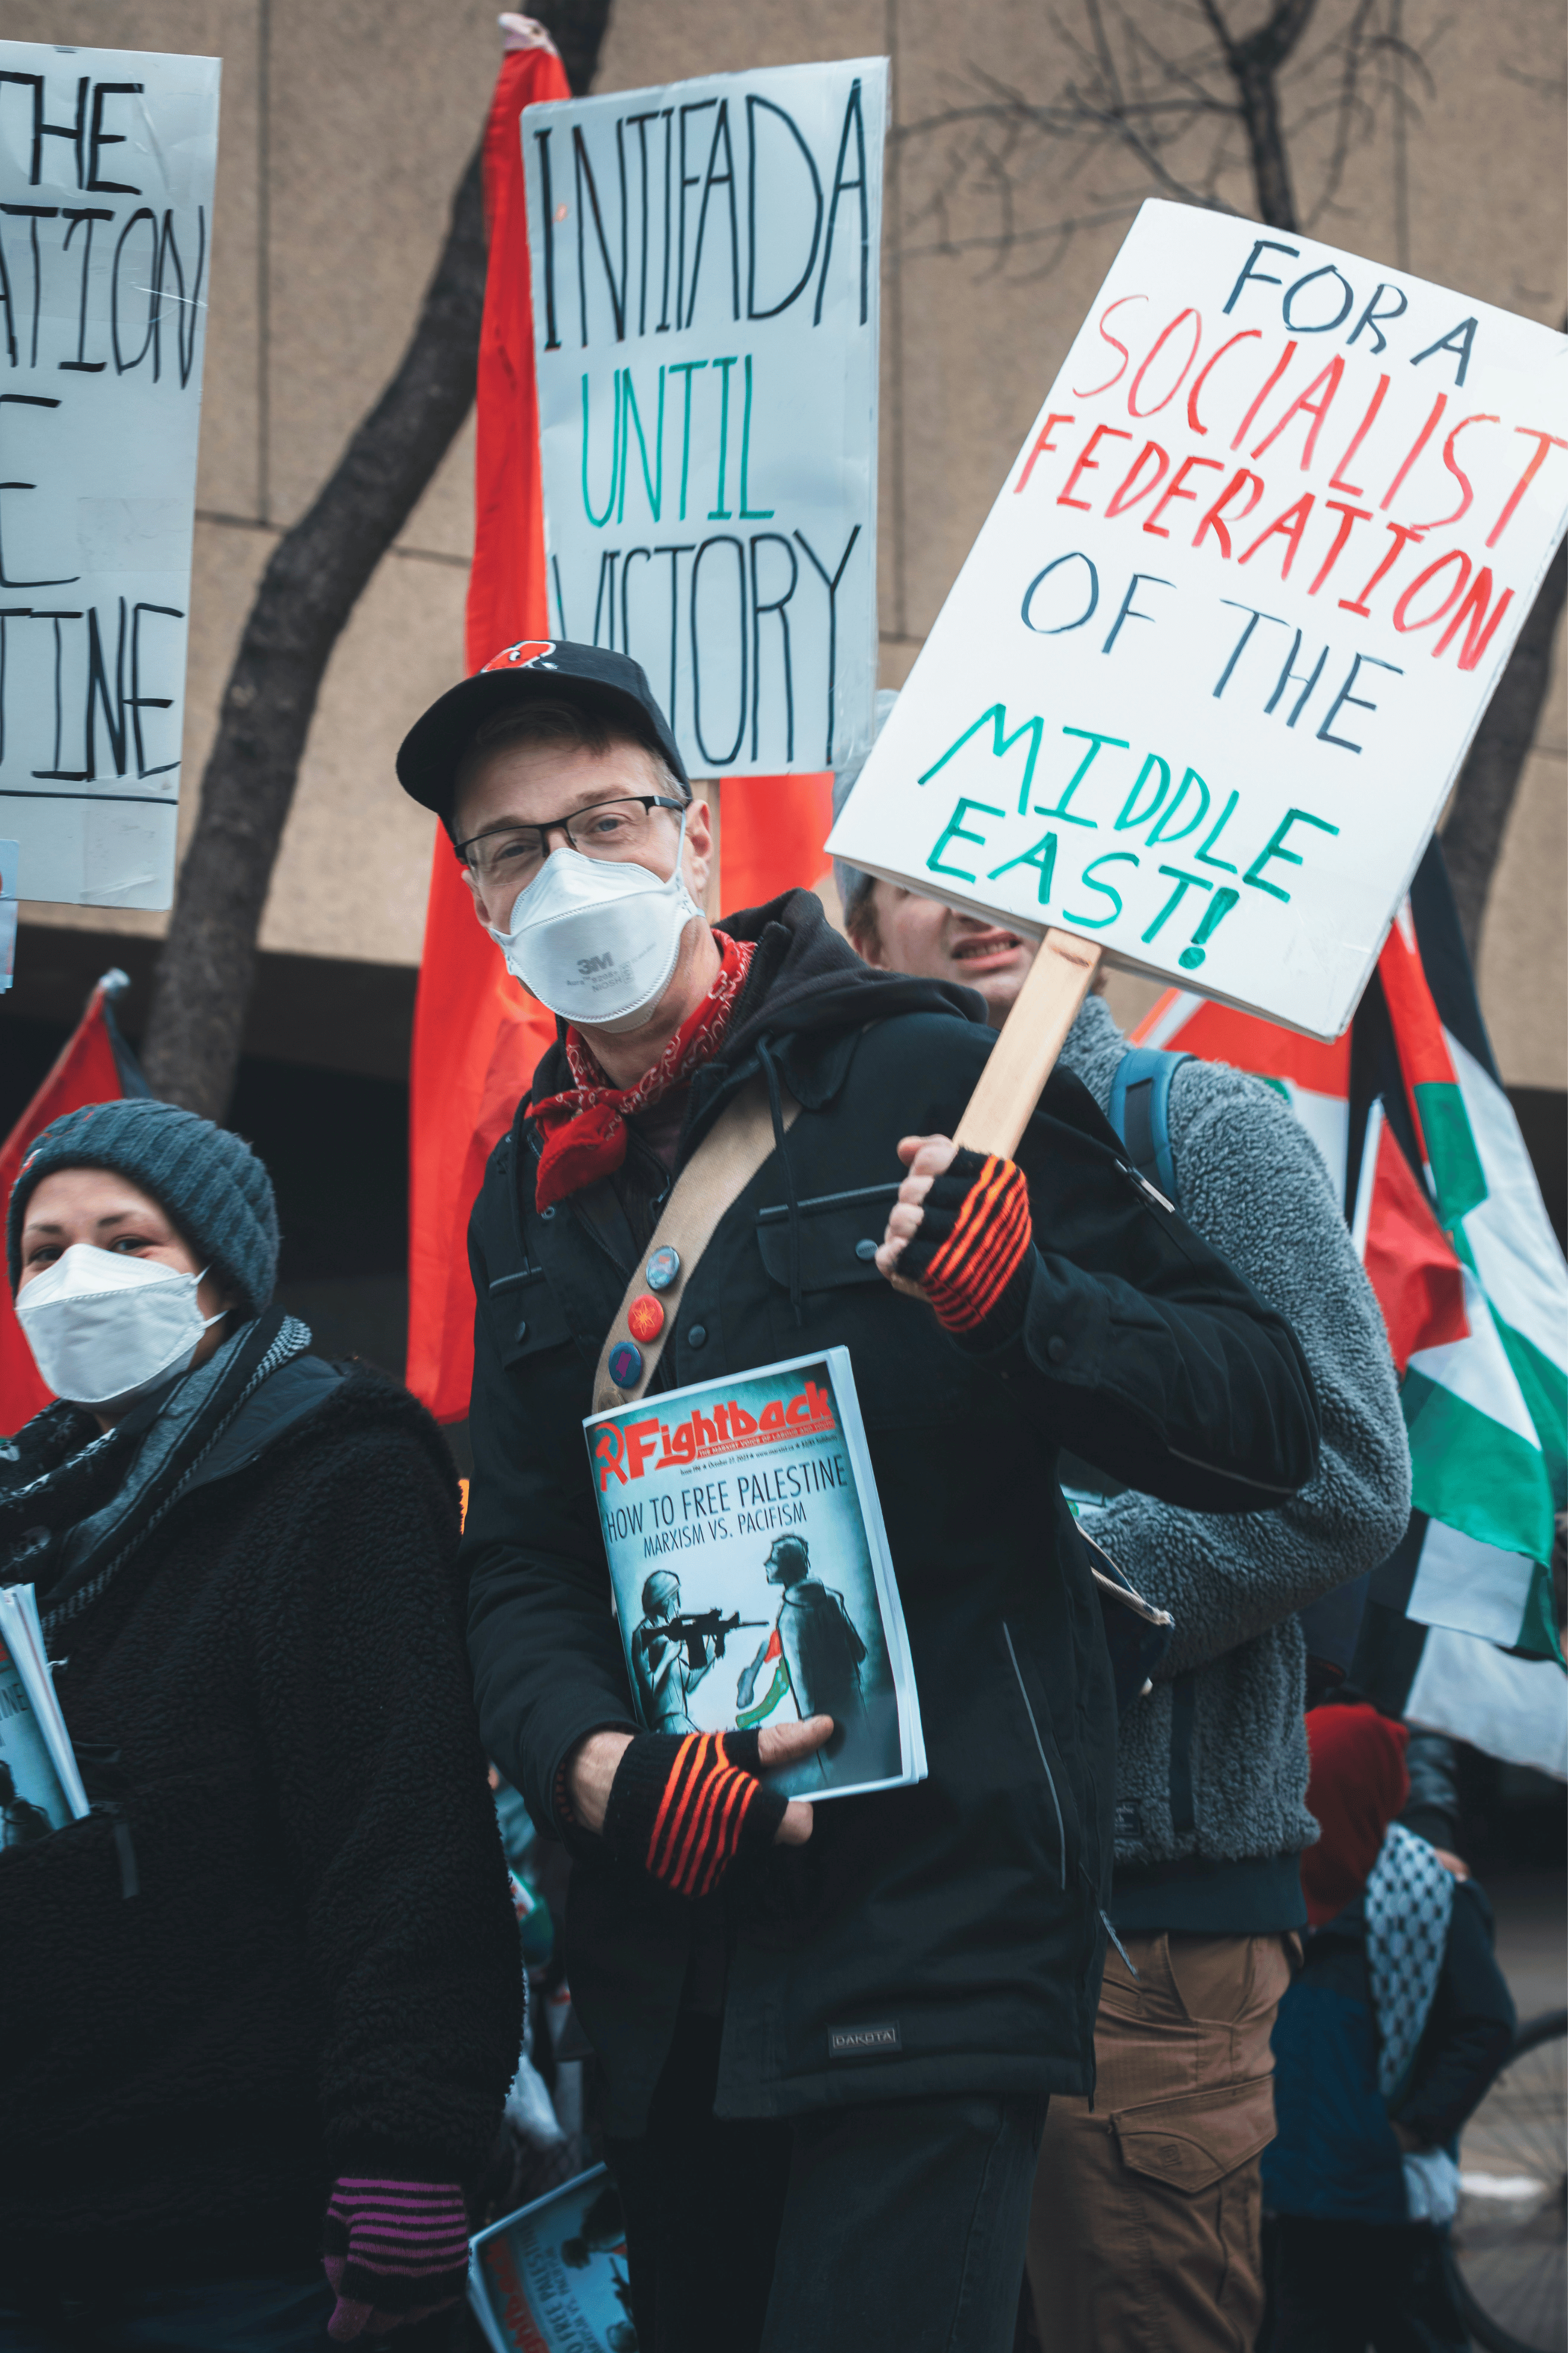 Manifestantes enmascarados a favor de Palestina con lemas comunistas y una revista comunista